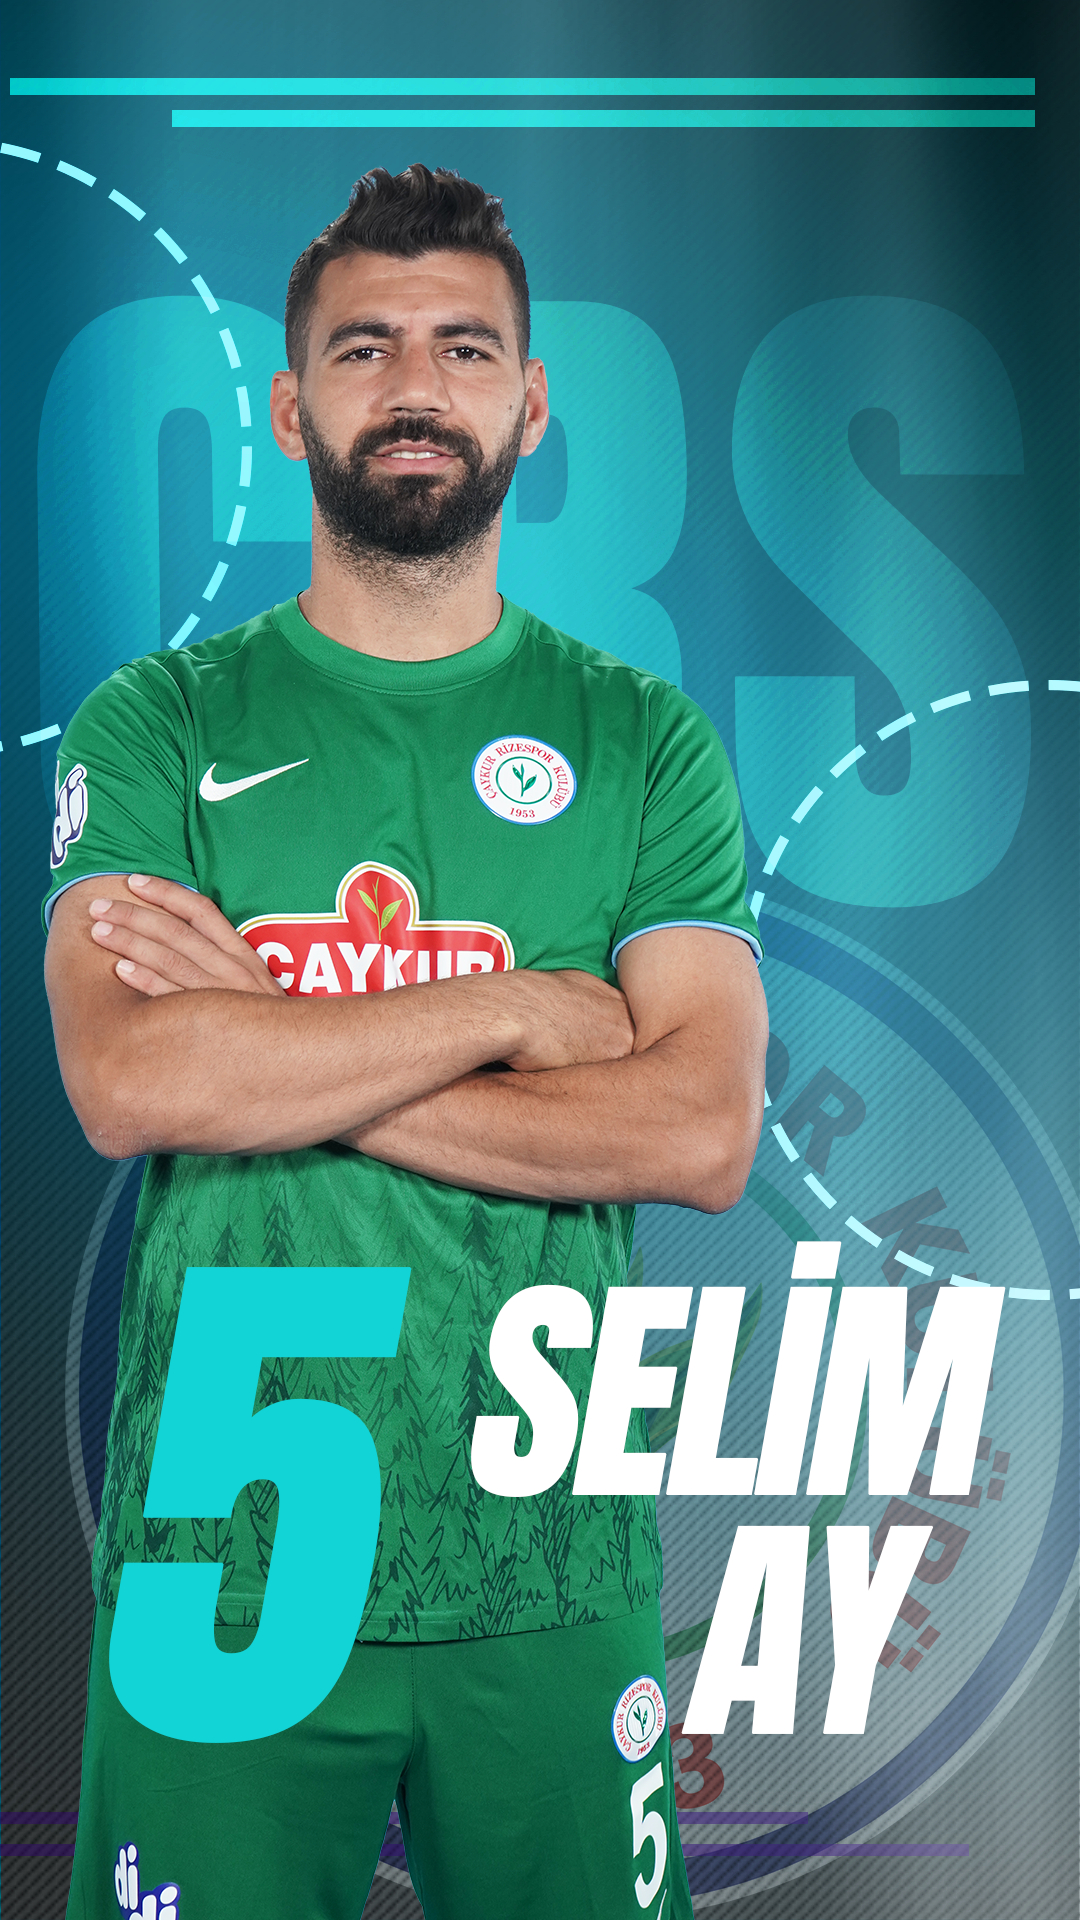 Selim Ay